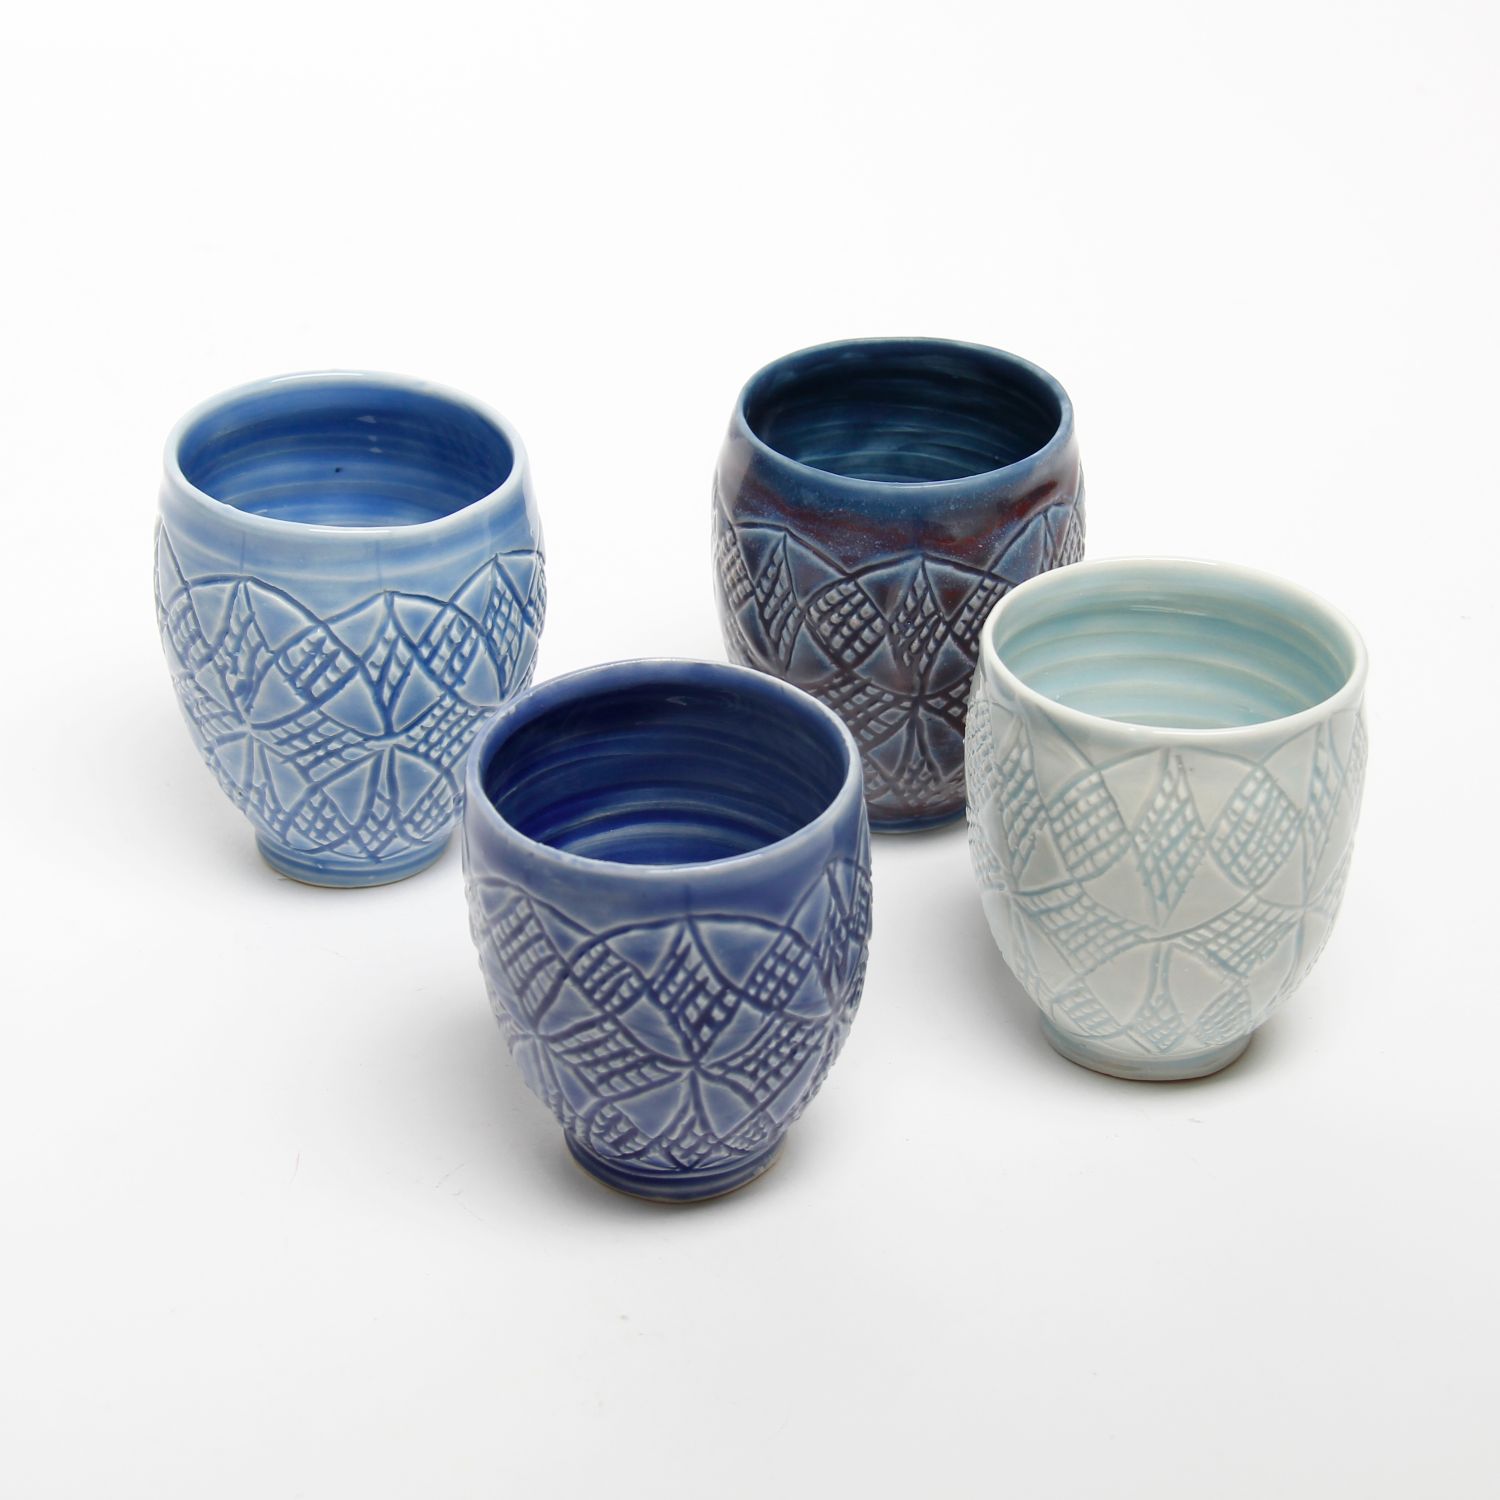 Arlene Kushnir: Purple-Blue Cup Product Image 2 of 3